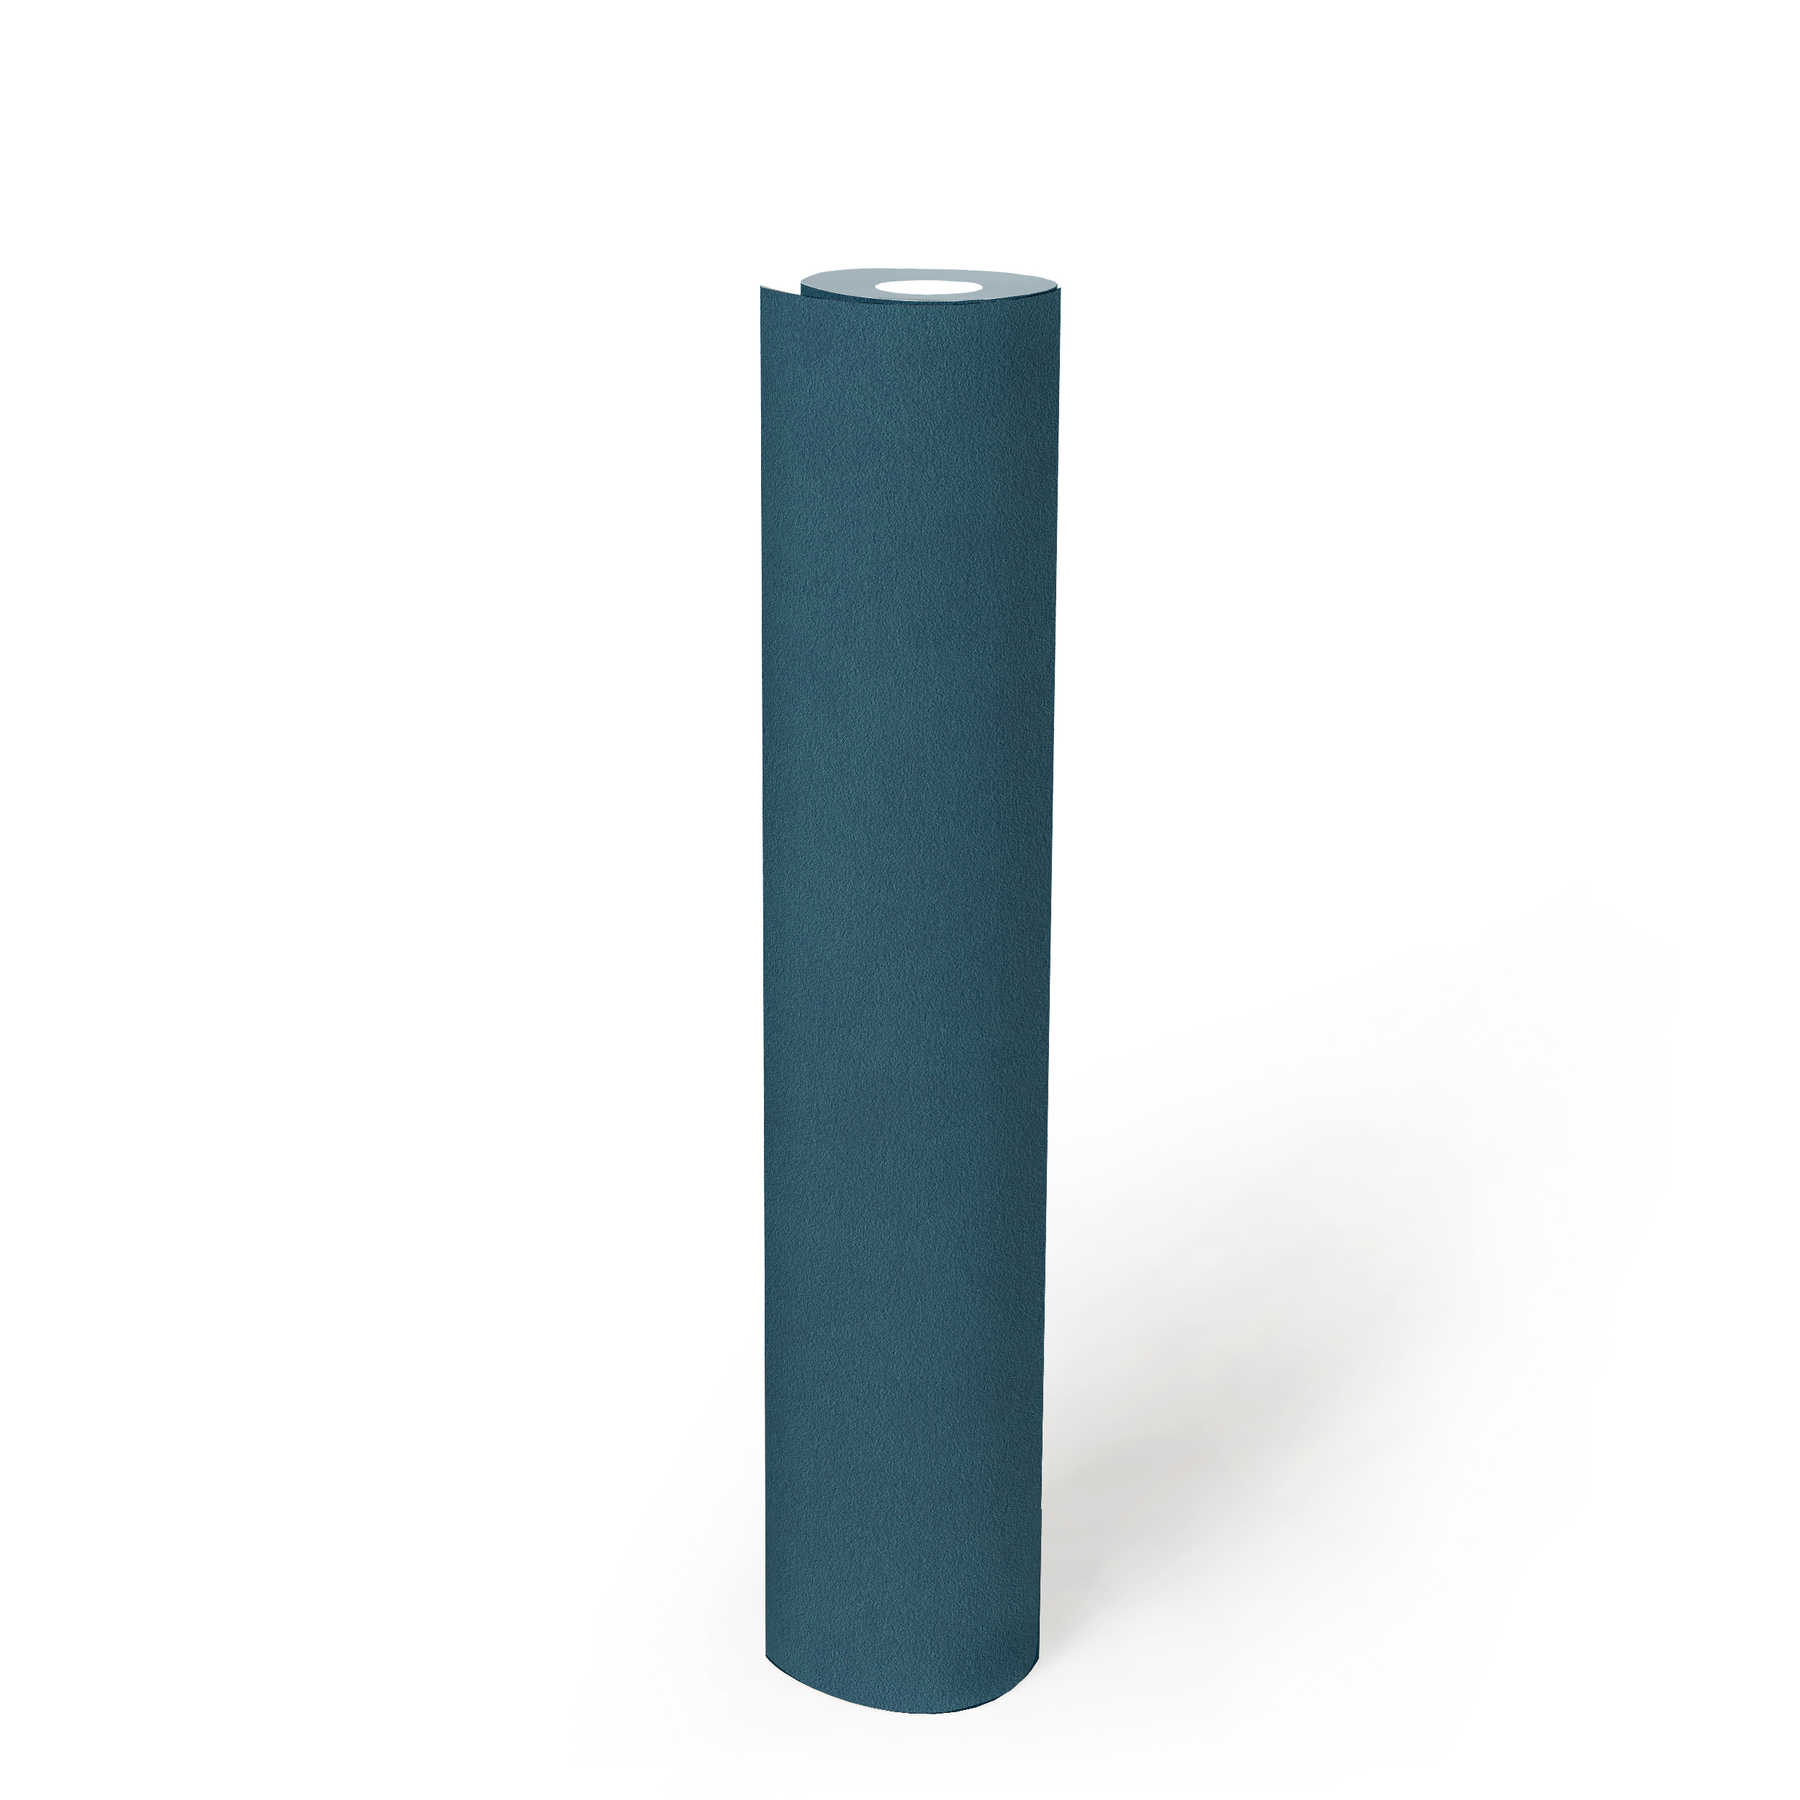             PopStyle papier peint couleurs vives, texture gaufrée - bleu
        